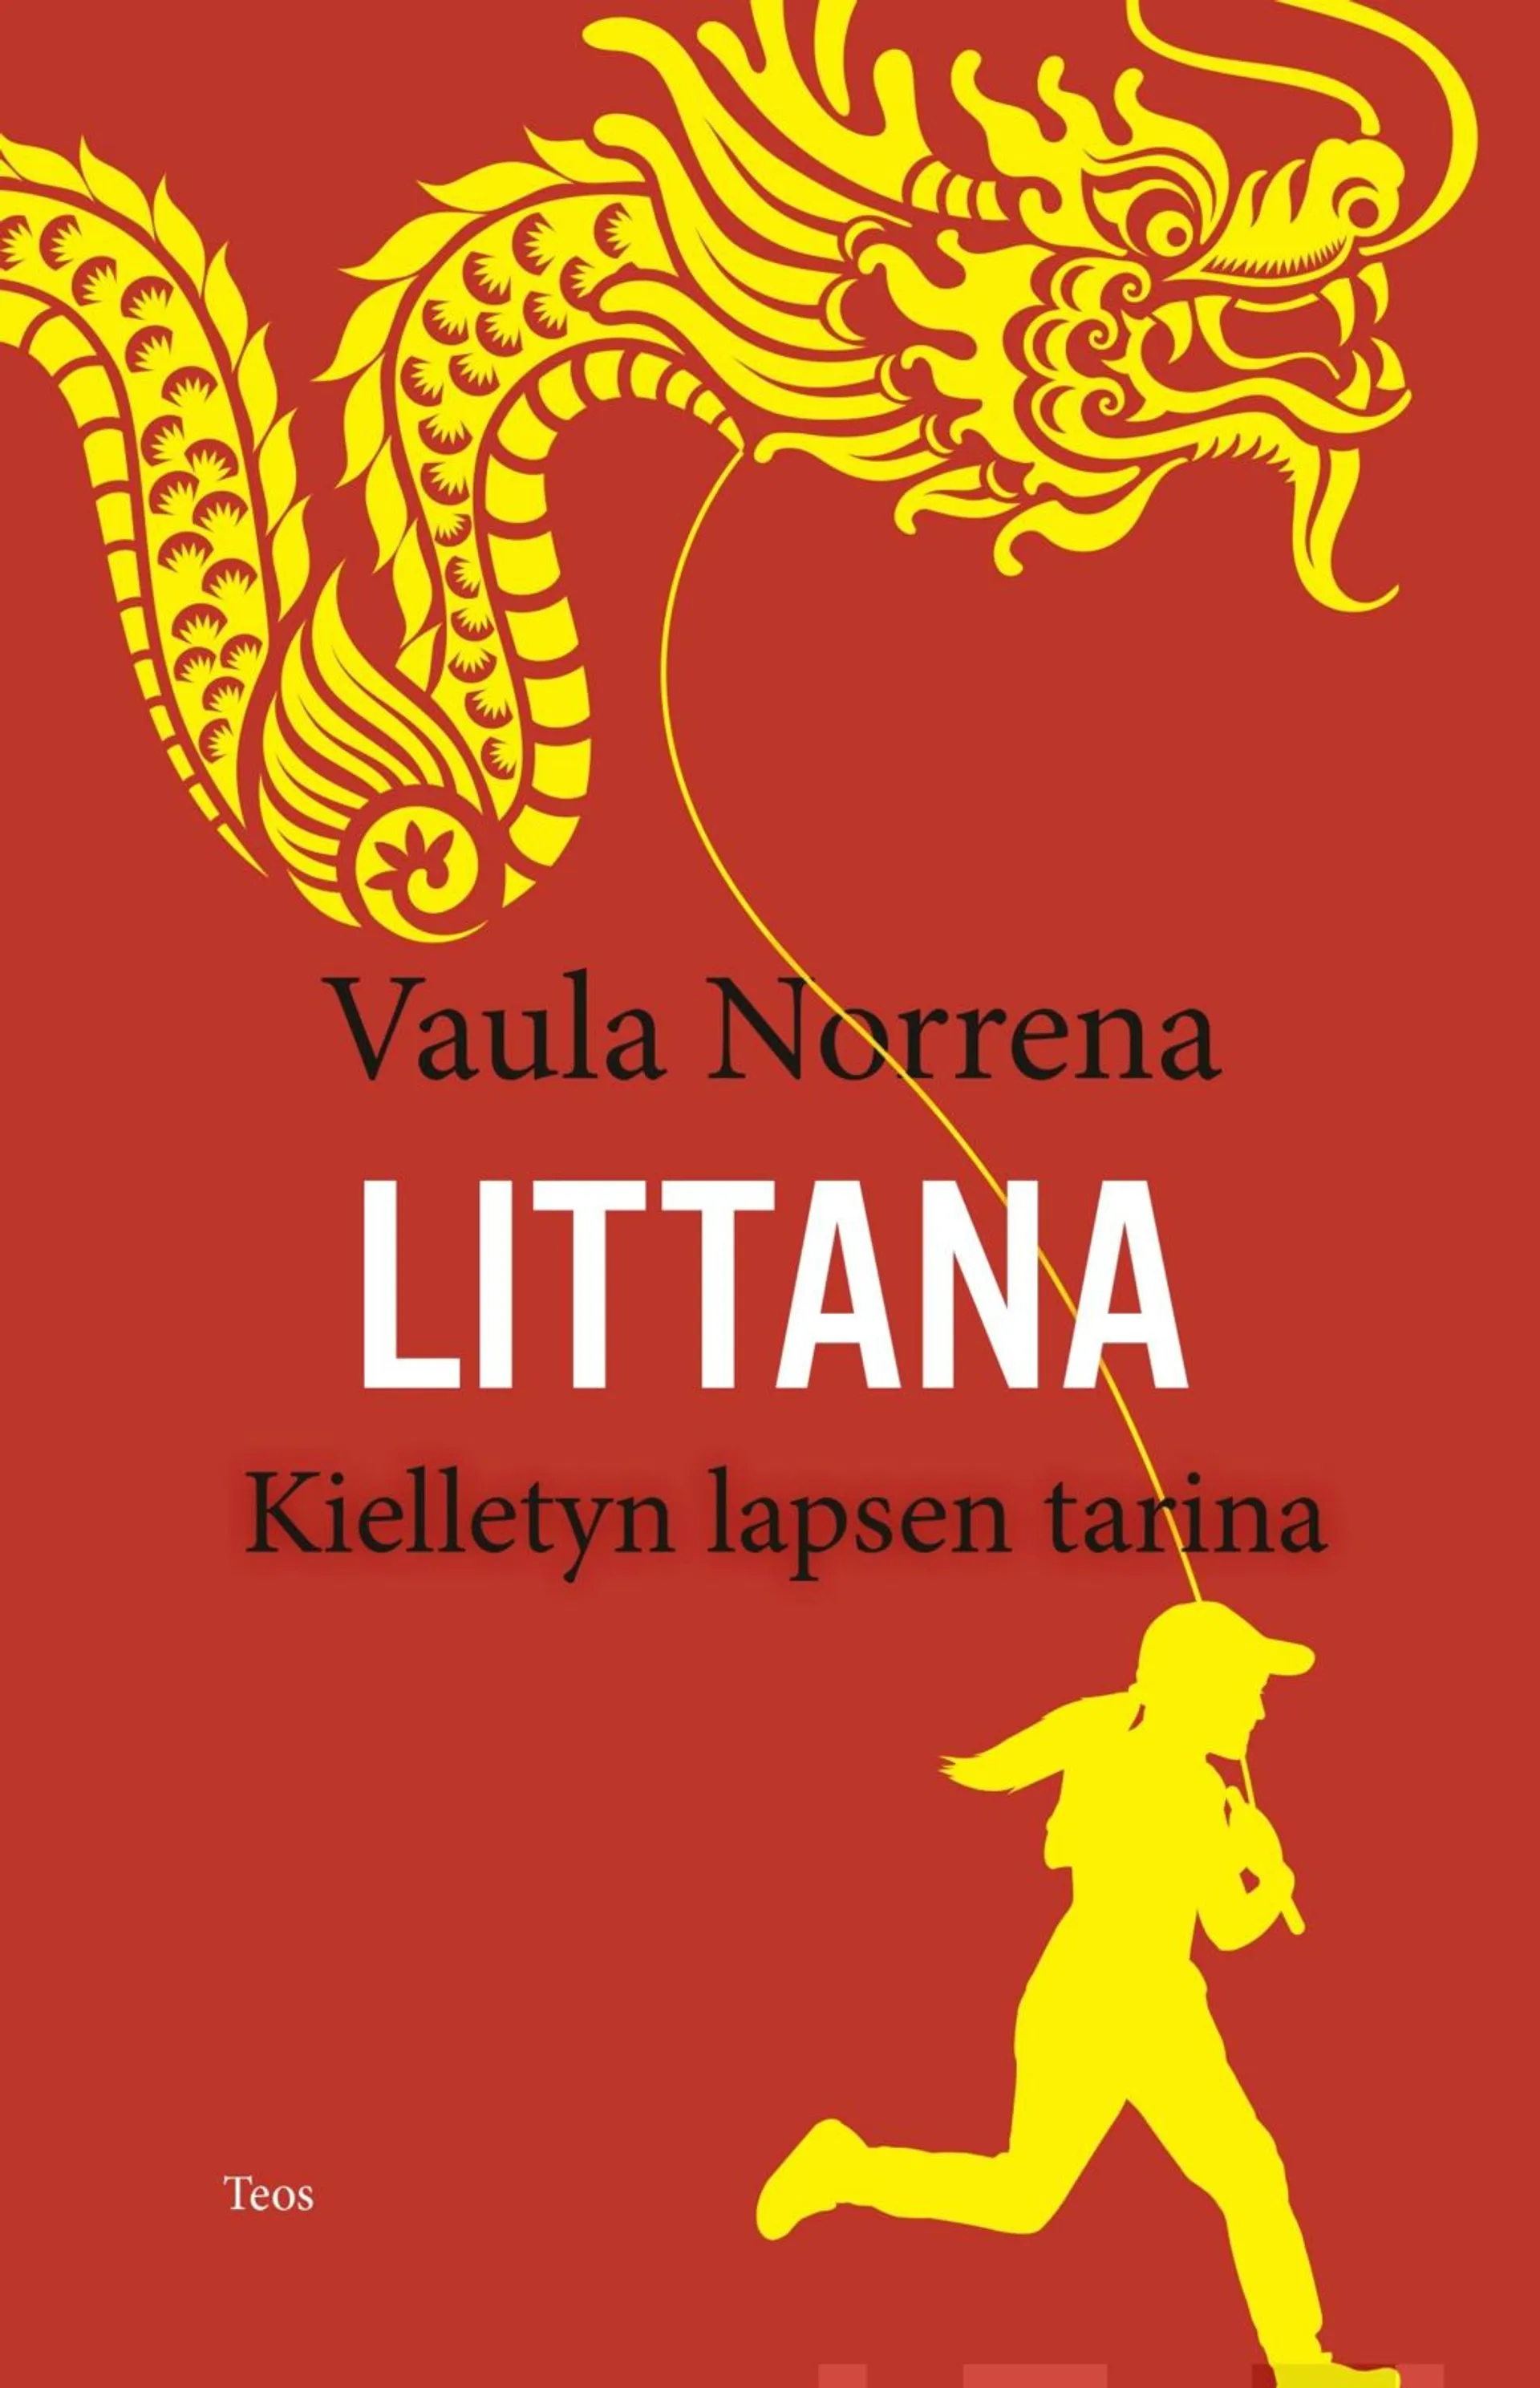 Norrena, Littana - Kielletyn lapsen tarina